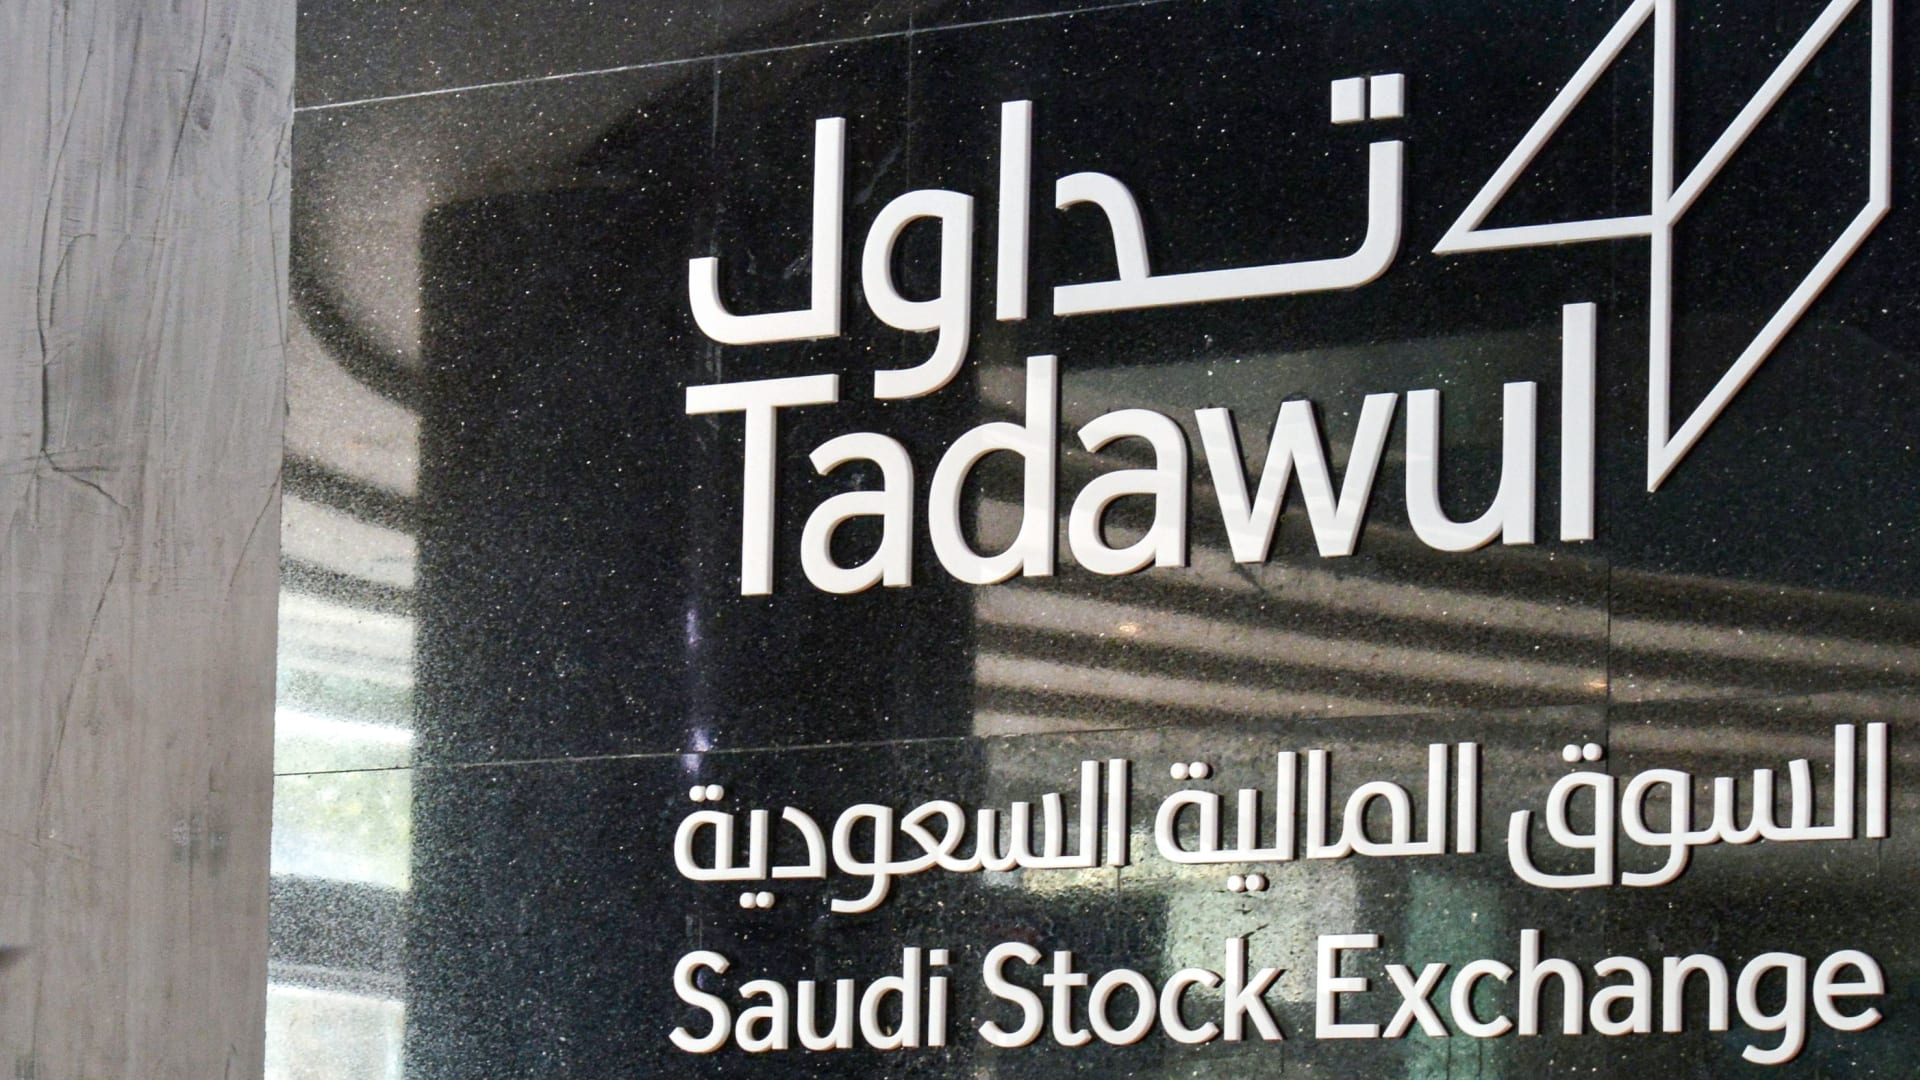 شركة تداول كسوق للأوراق المالية - Saudi Stock Exchange Tadwaul
